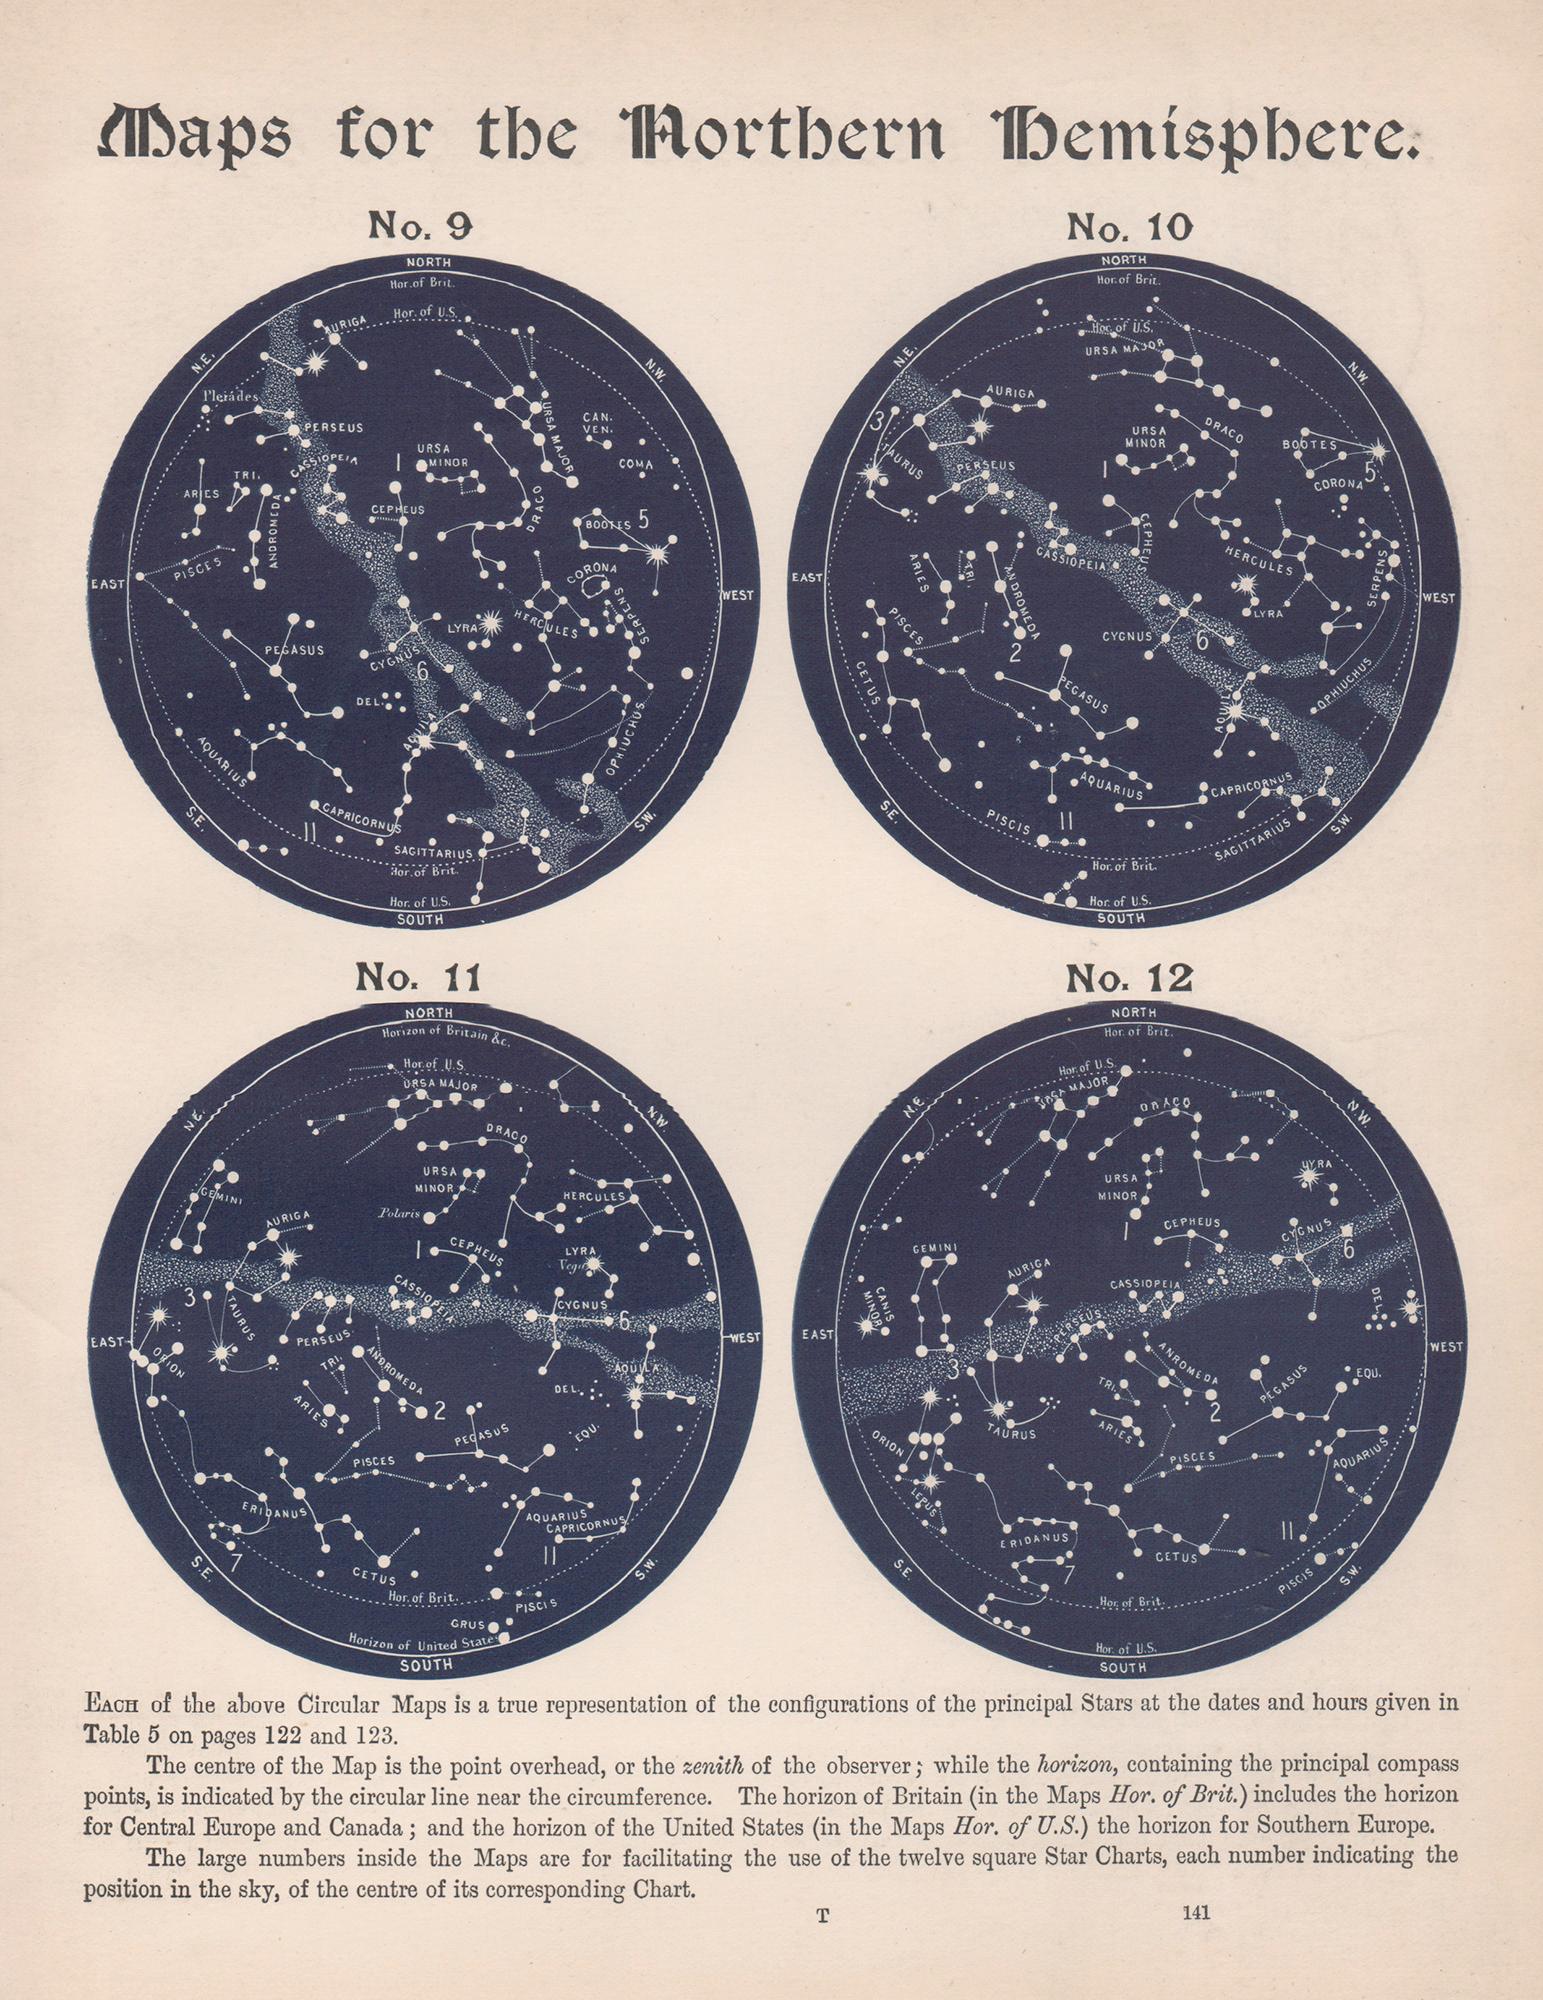 Print William Peck - Cartes de l'hémisphère nord. Antiquité - Astronomie - Gravure sur constellation d'étoiles